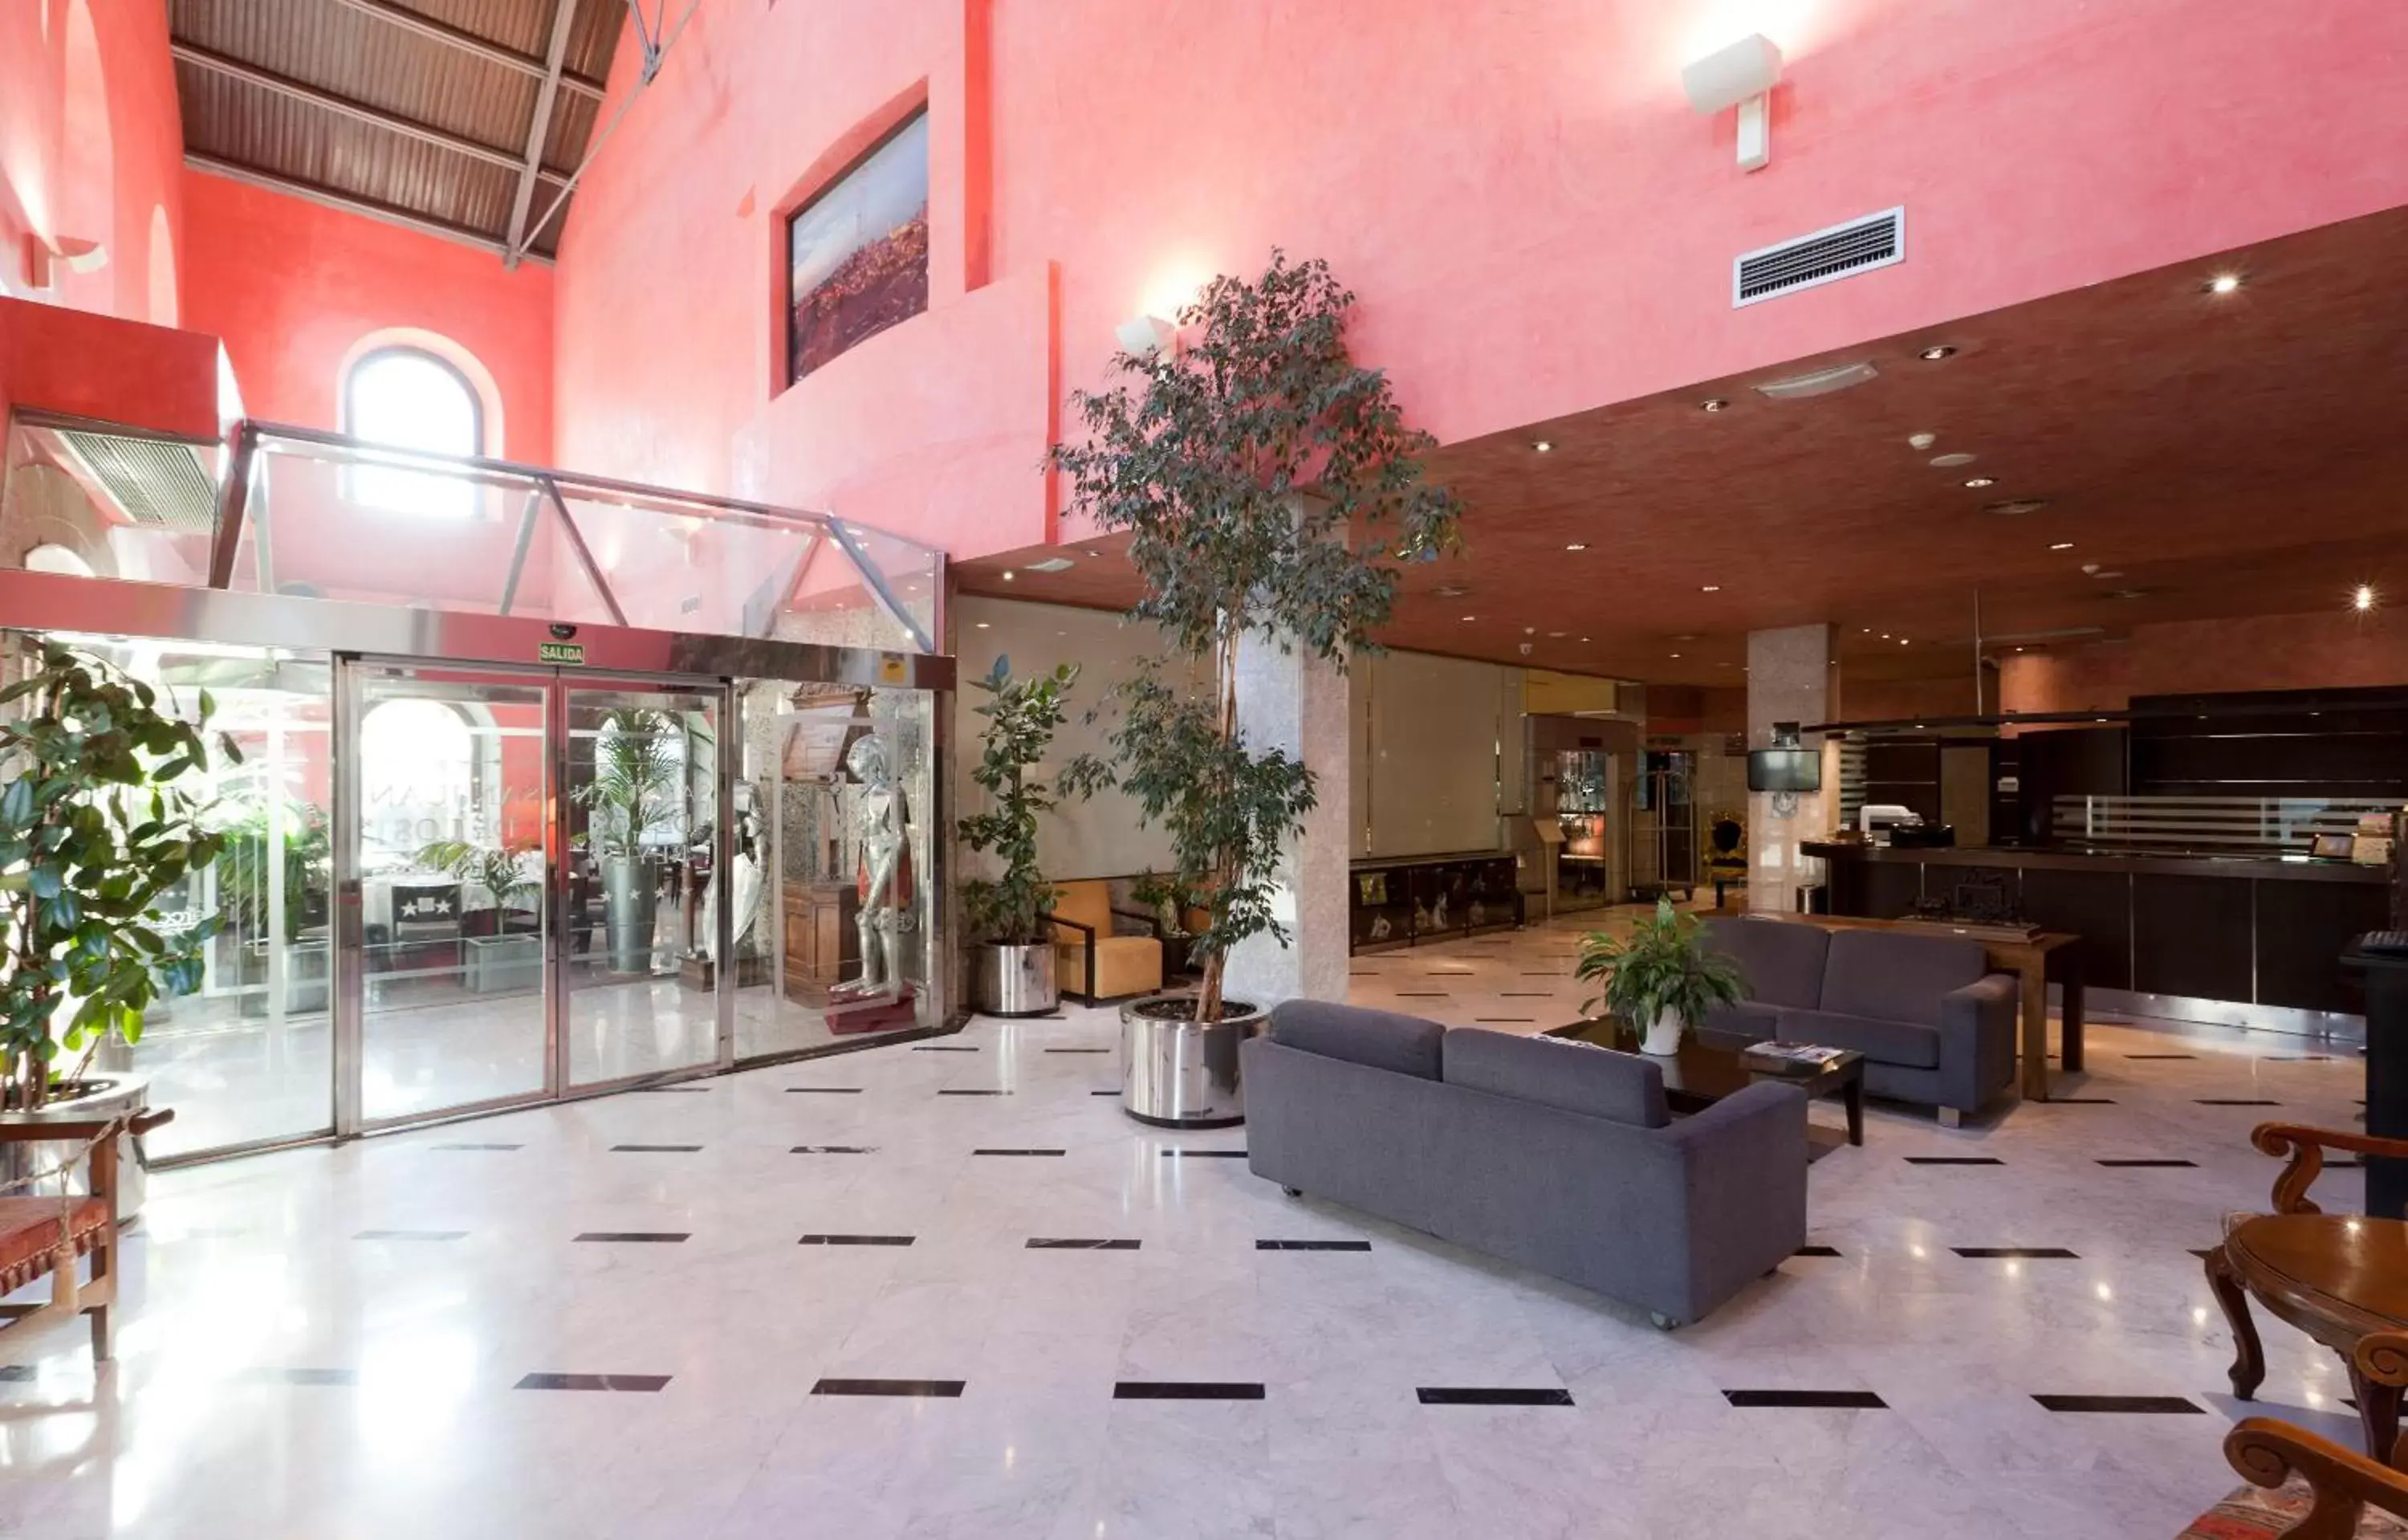 Lobby or reception in Hotel San Juan de los Reyes